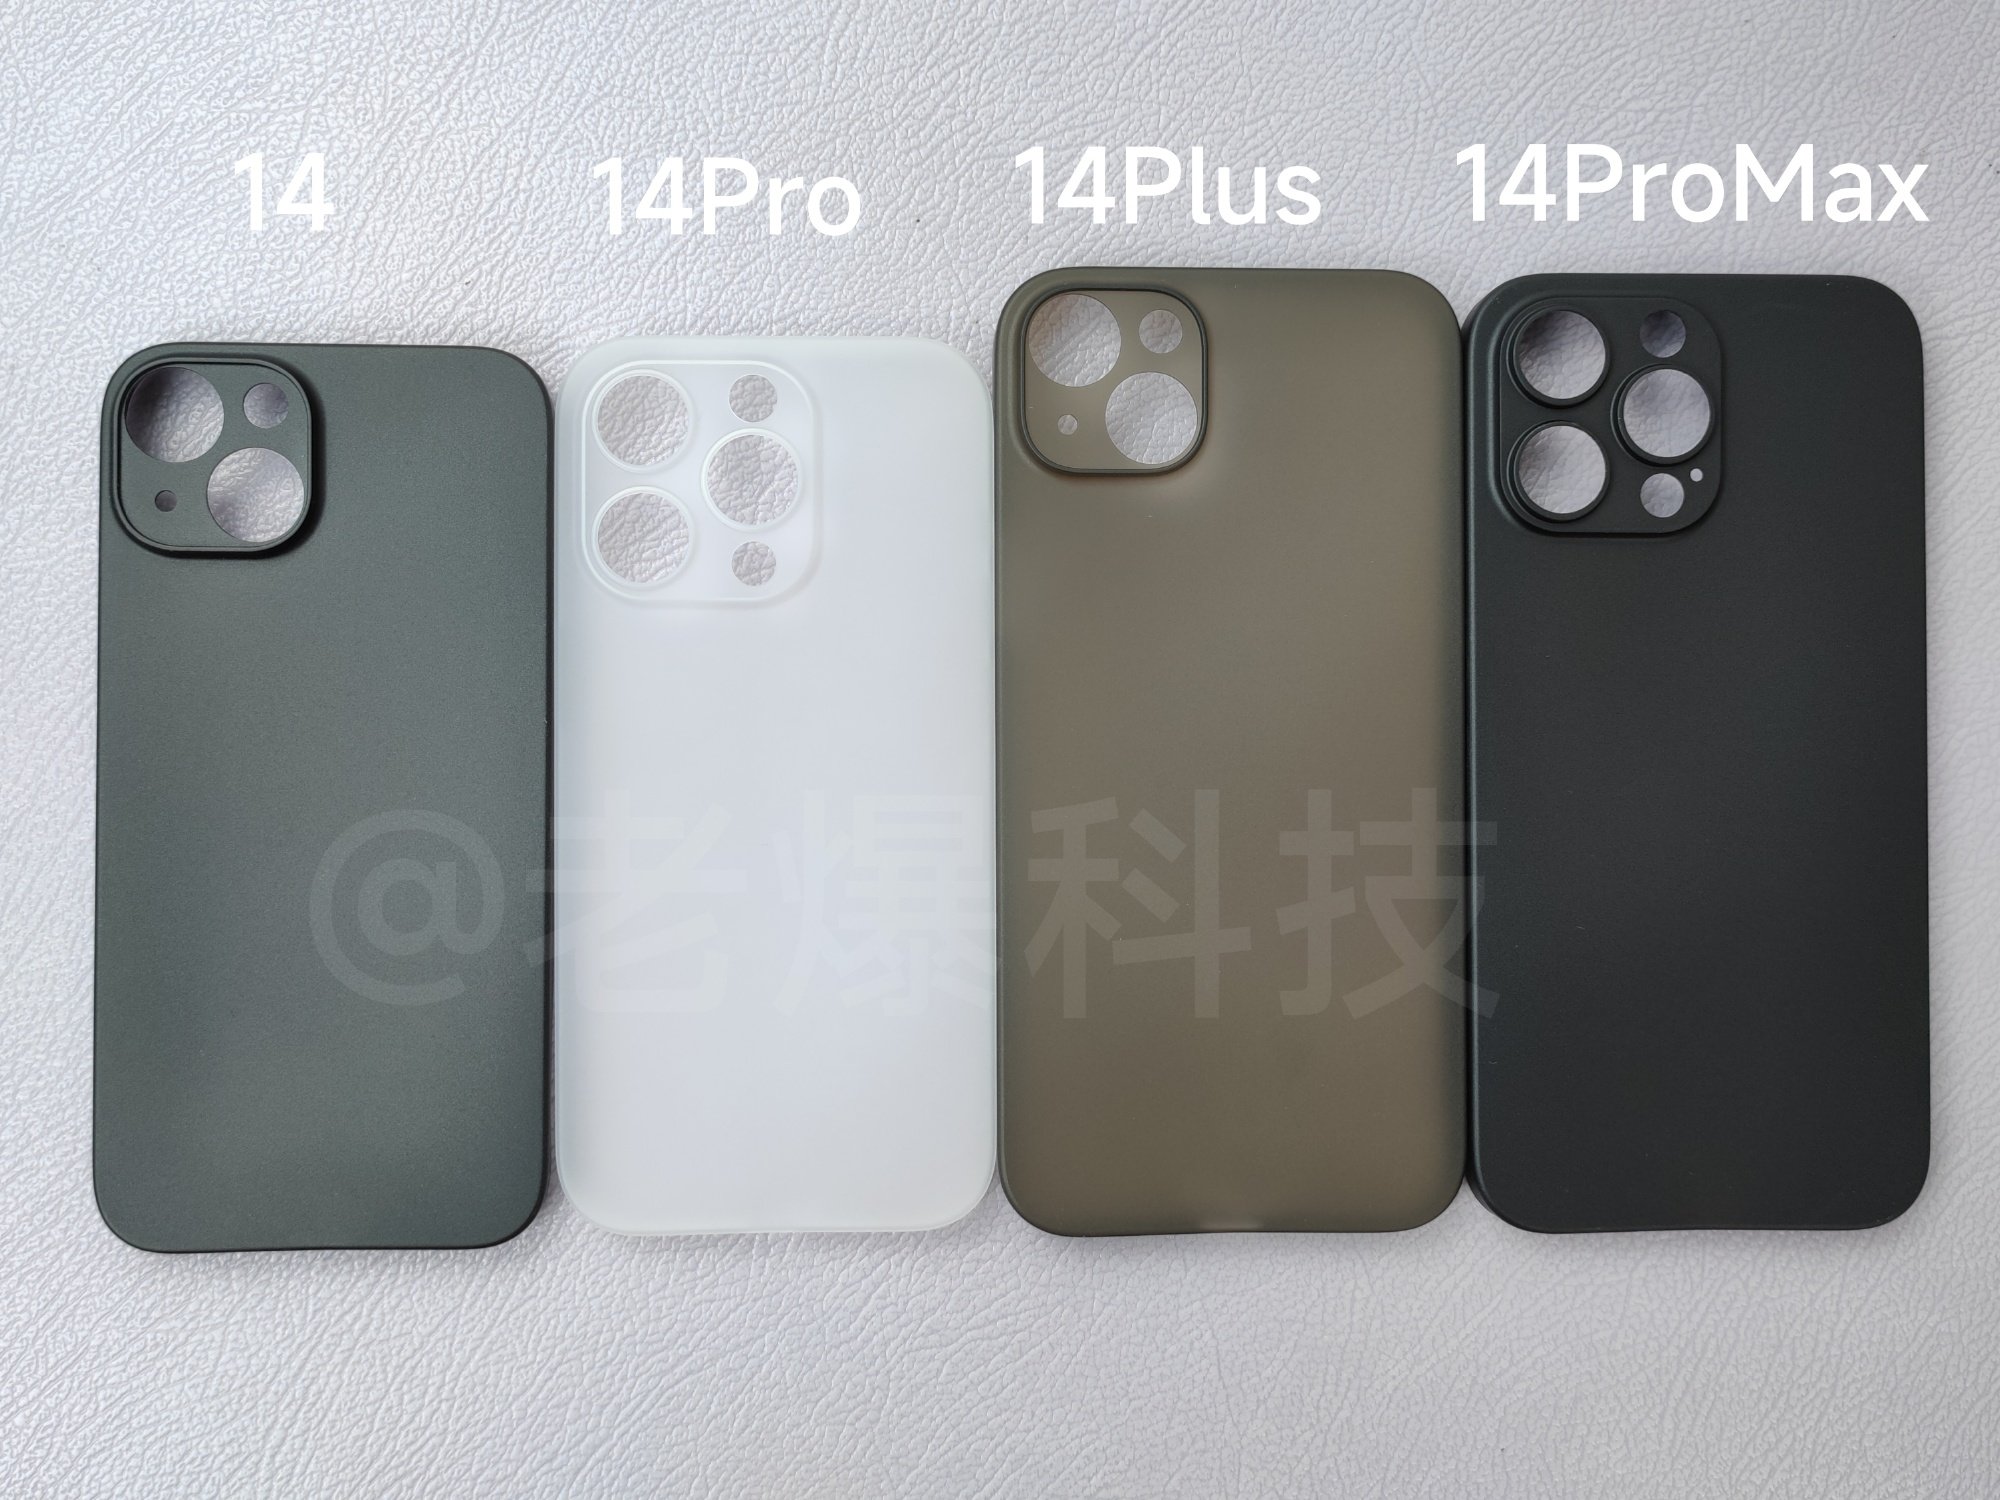 Hé lộ mới về iPhone 14 Pro Max giá rẻ, được nâng cấp mạnh về camera - Ảnh 2.